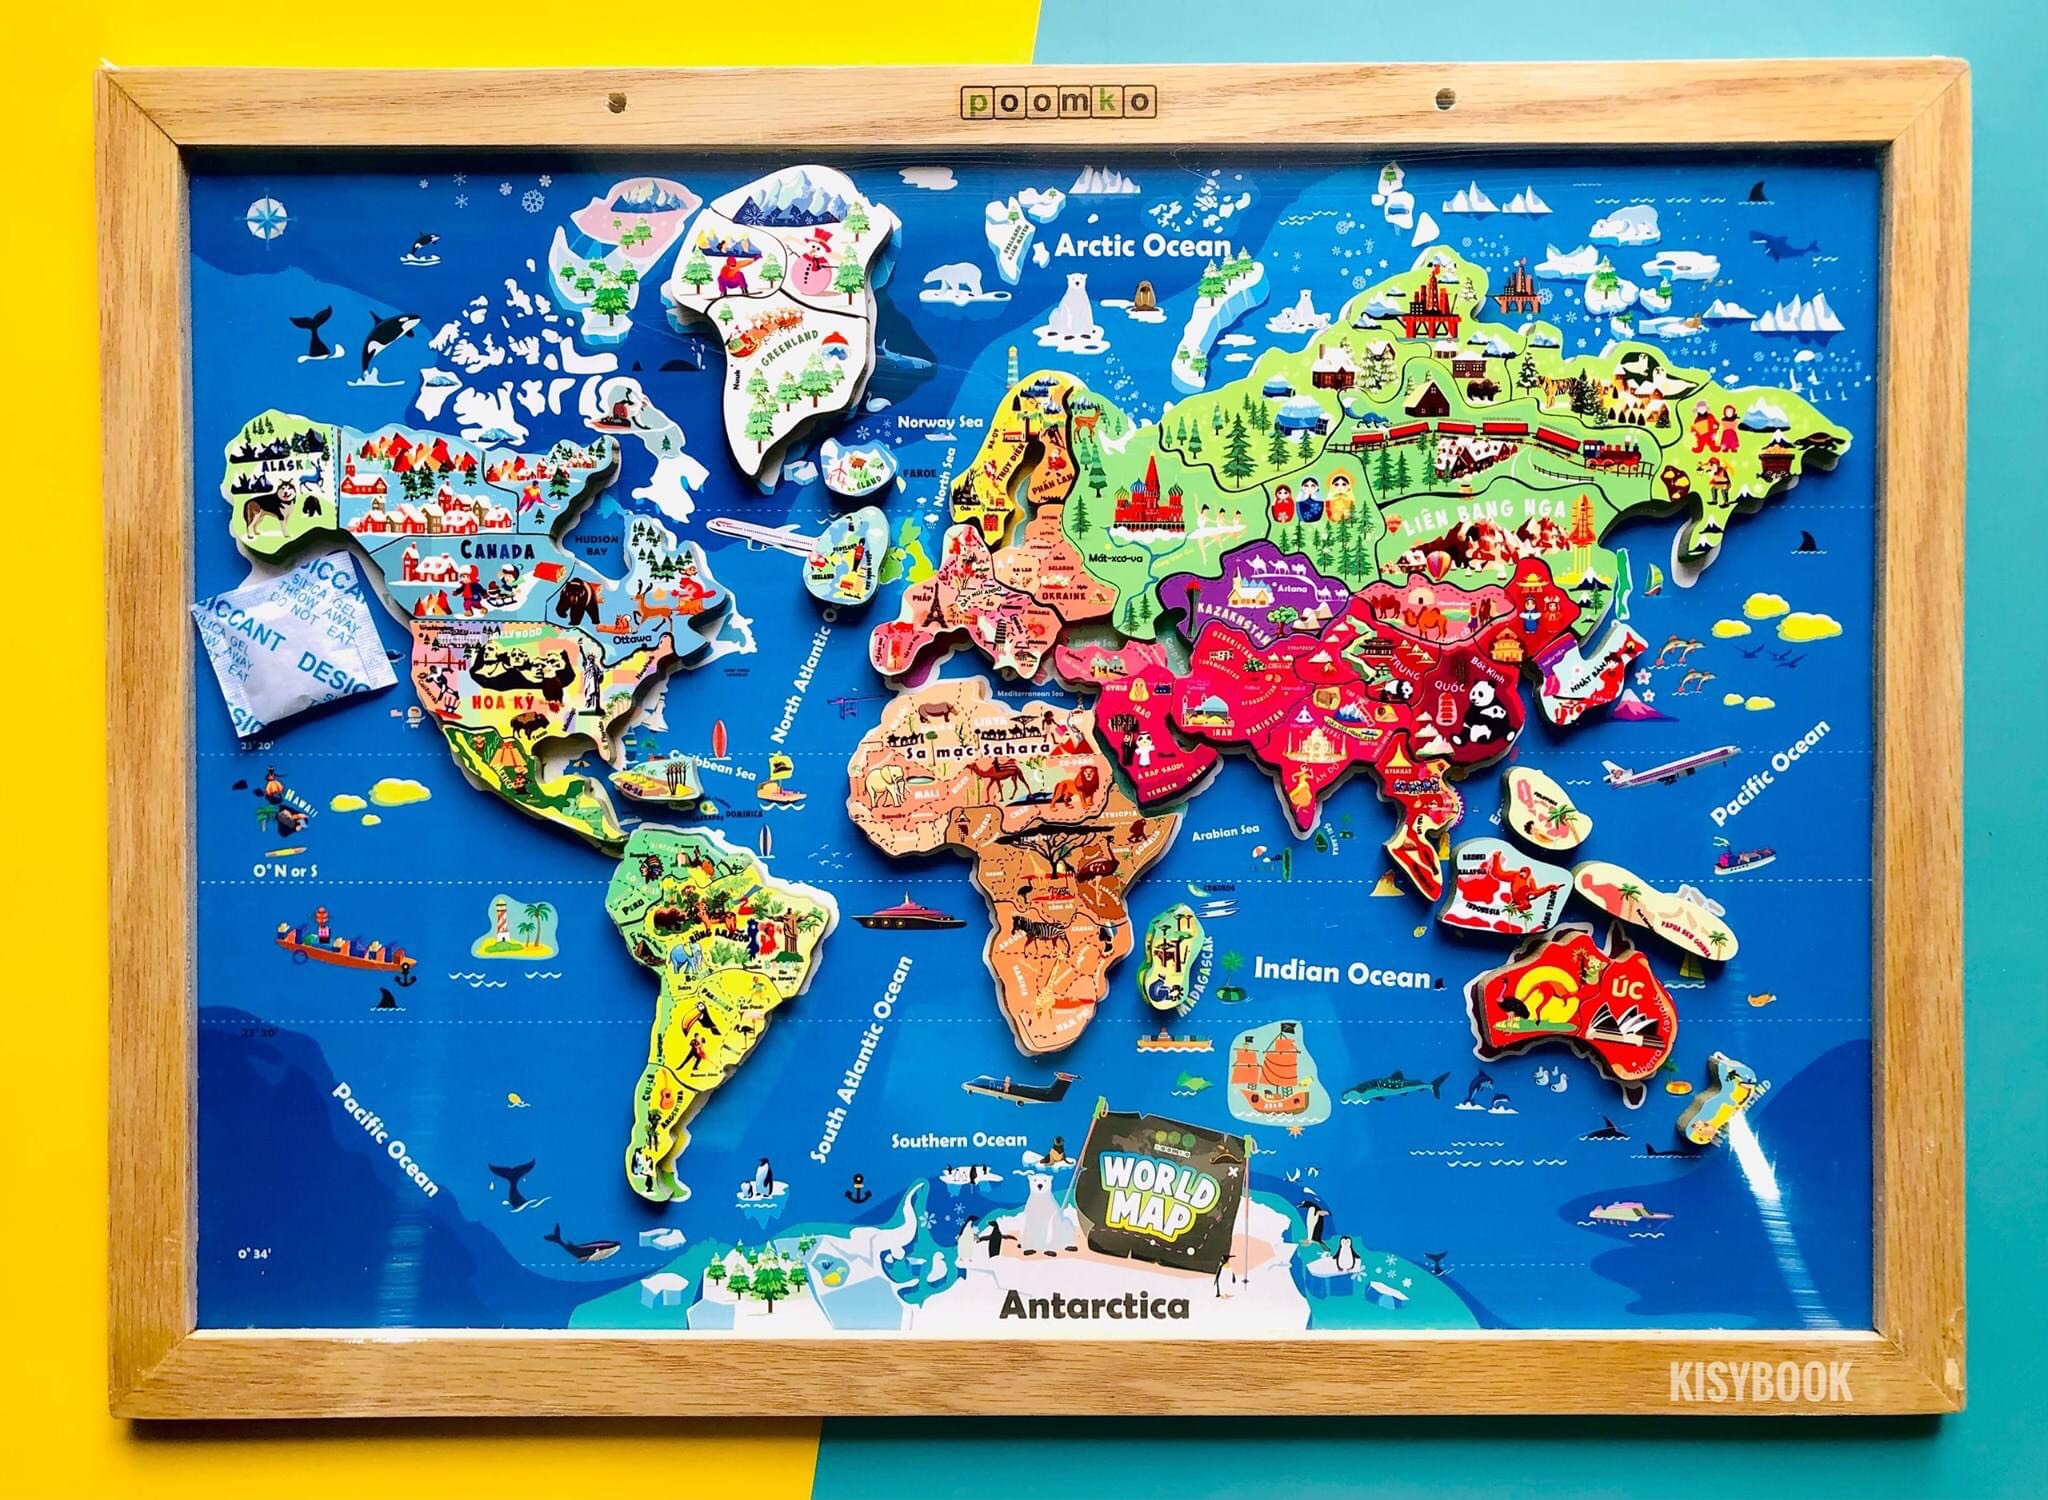 Mô Hình Lắp Ghép Bản Đồ Thế Giới Bằng Nam Châm Vĩnh Cửu - 2 Kích - Mô hình bản đồ thế giới nam châm tiên tiến. Với kích thước đa dạng, các mô hình bản đồ thế giới bằng nam châm Vĩnh Cửu này giúp cho các em học sinh trưởng thành và khả năng phát triển tư duy của mình khi họ có thể giới thiệu các địa điểm nổi tiếng trên thế giới bằng bản đồ.